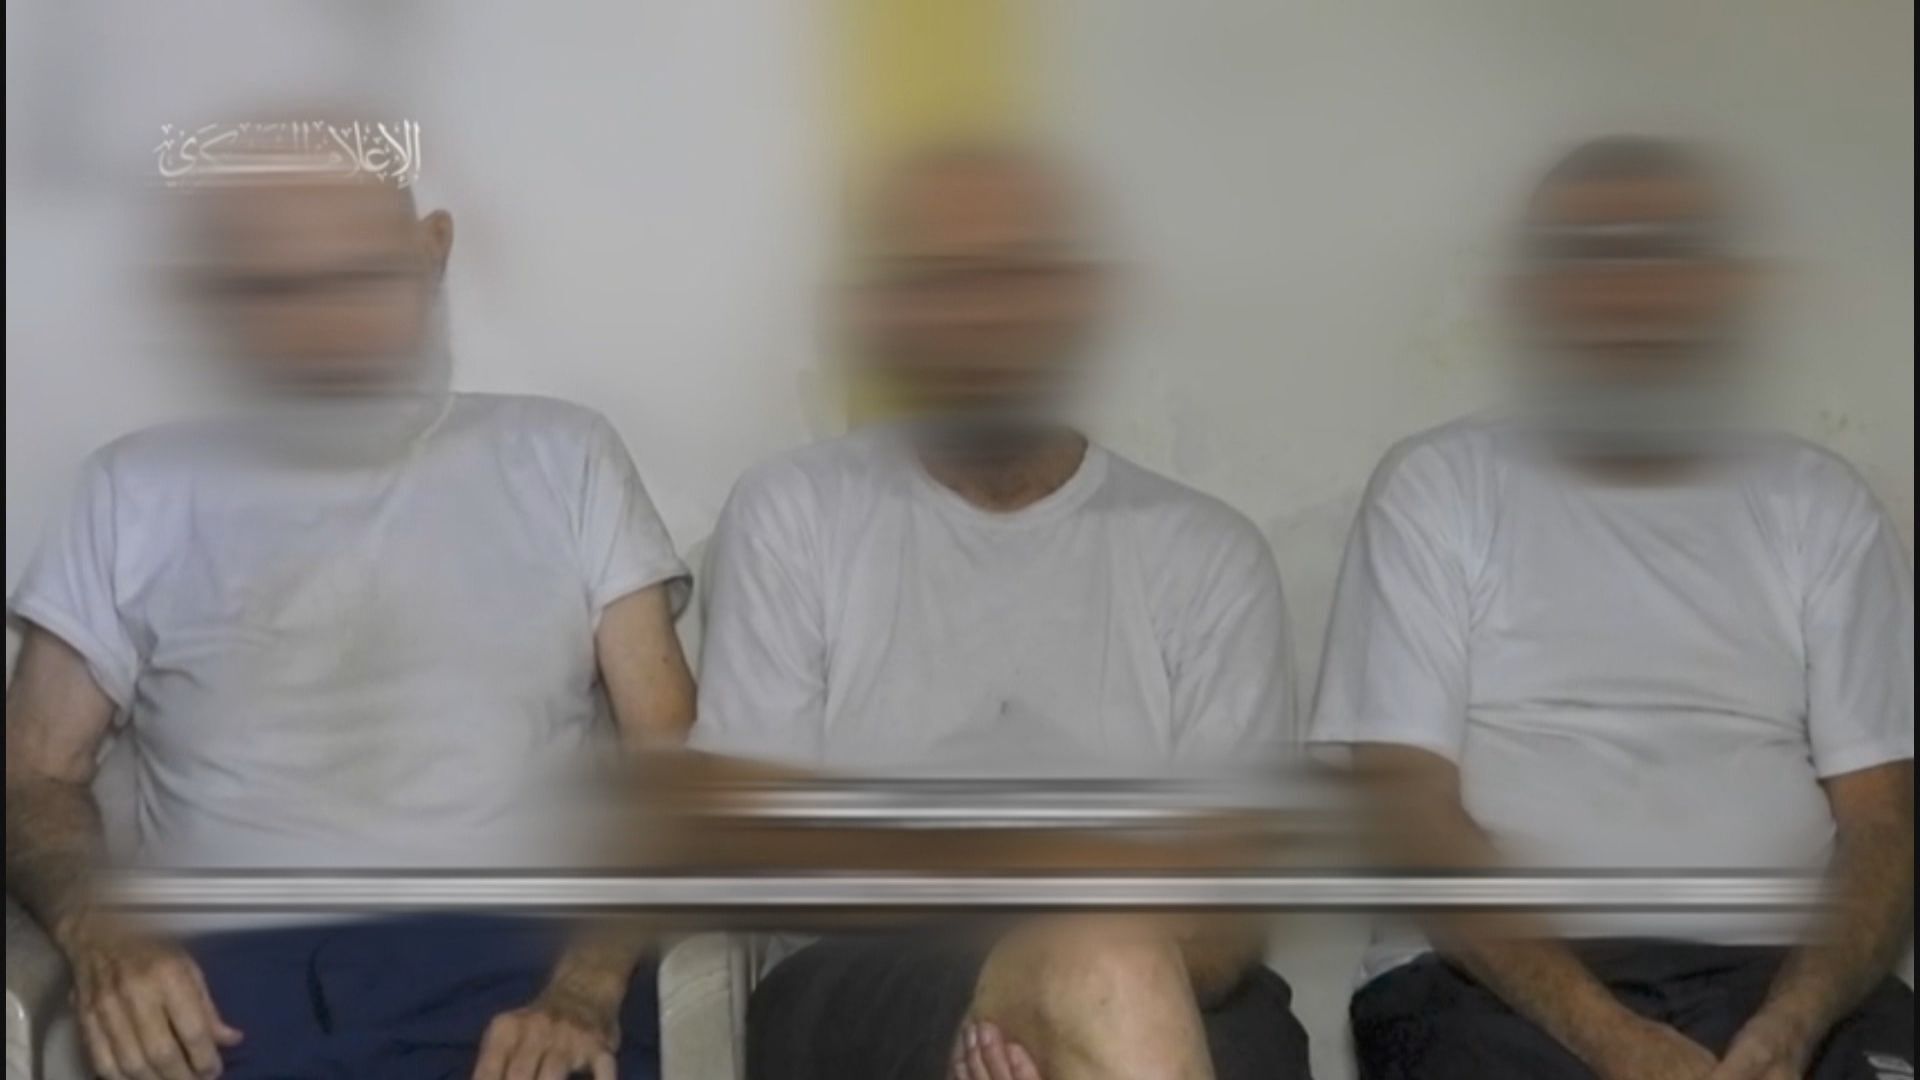 Hamas video shows elderly Israeli captives pleading for release